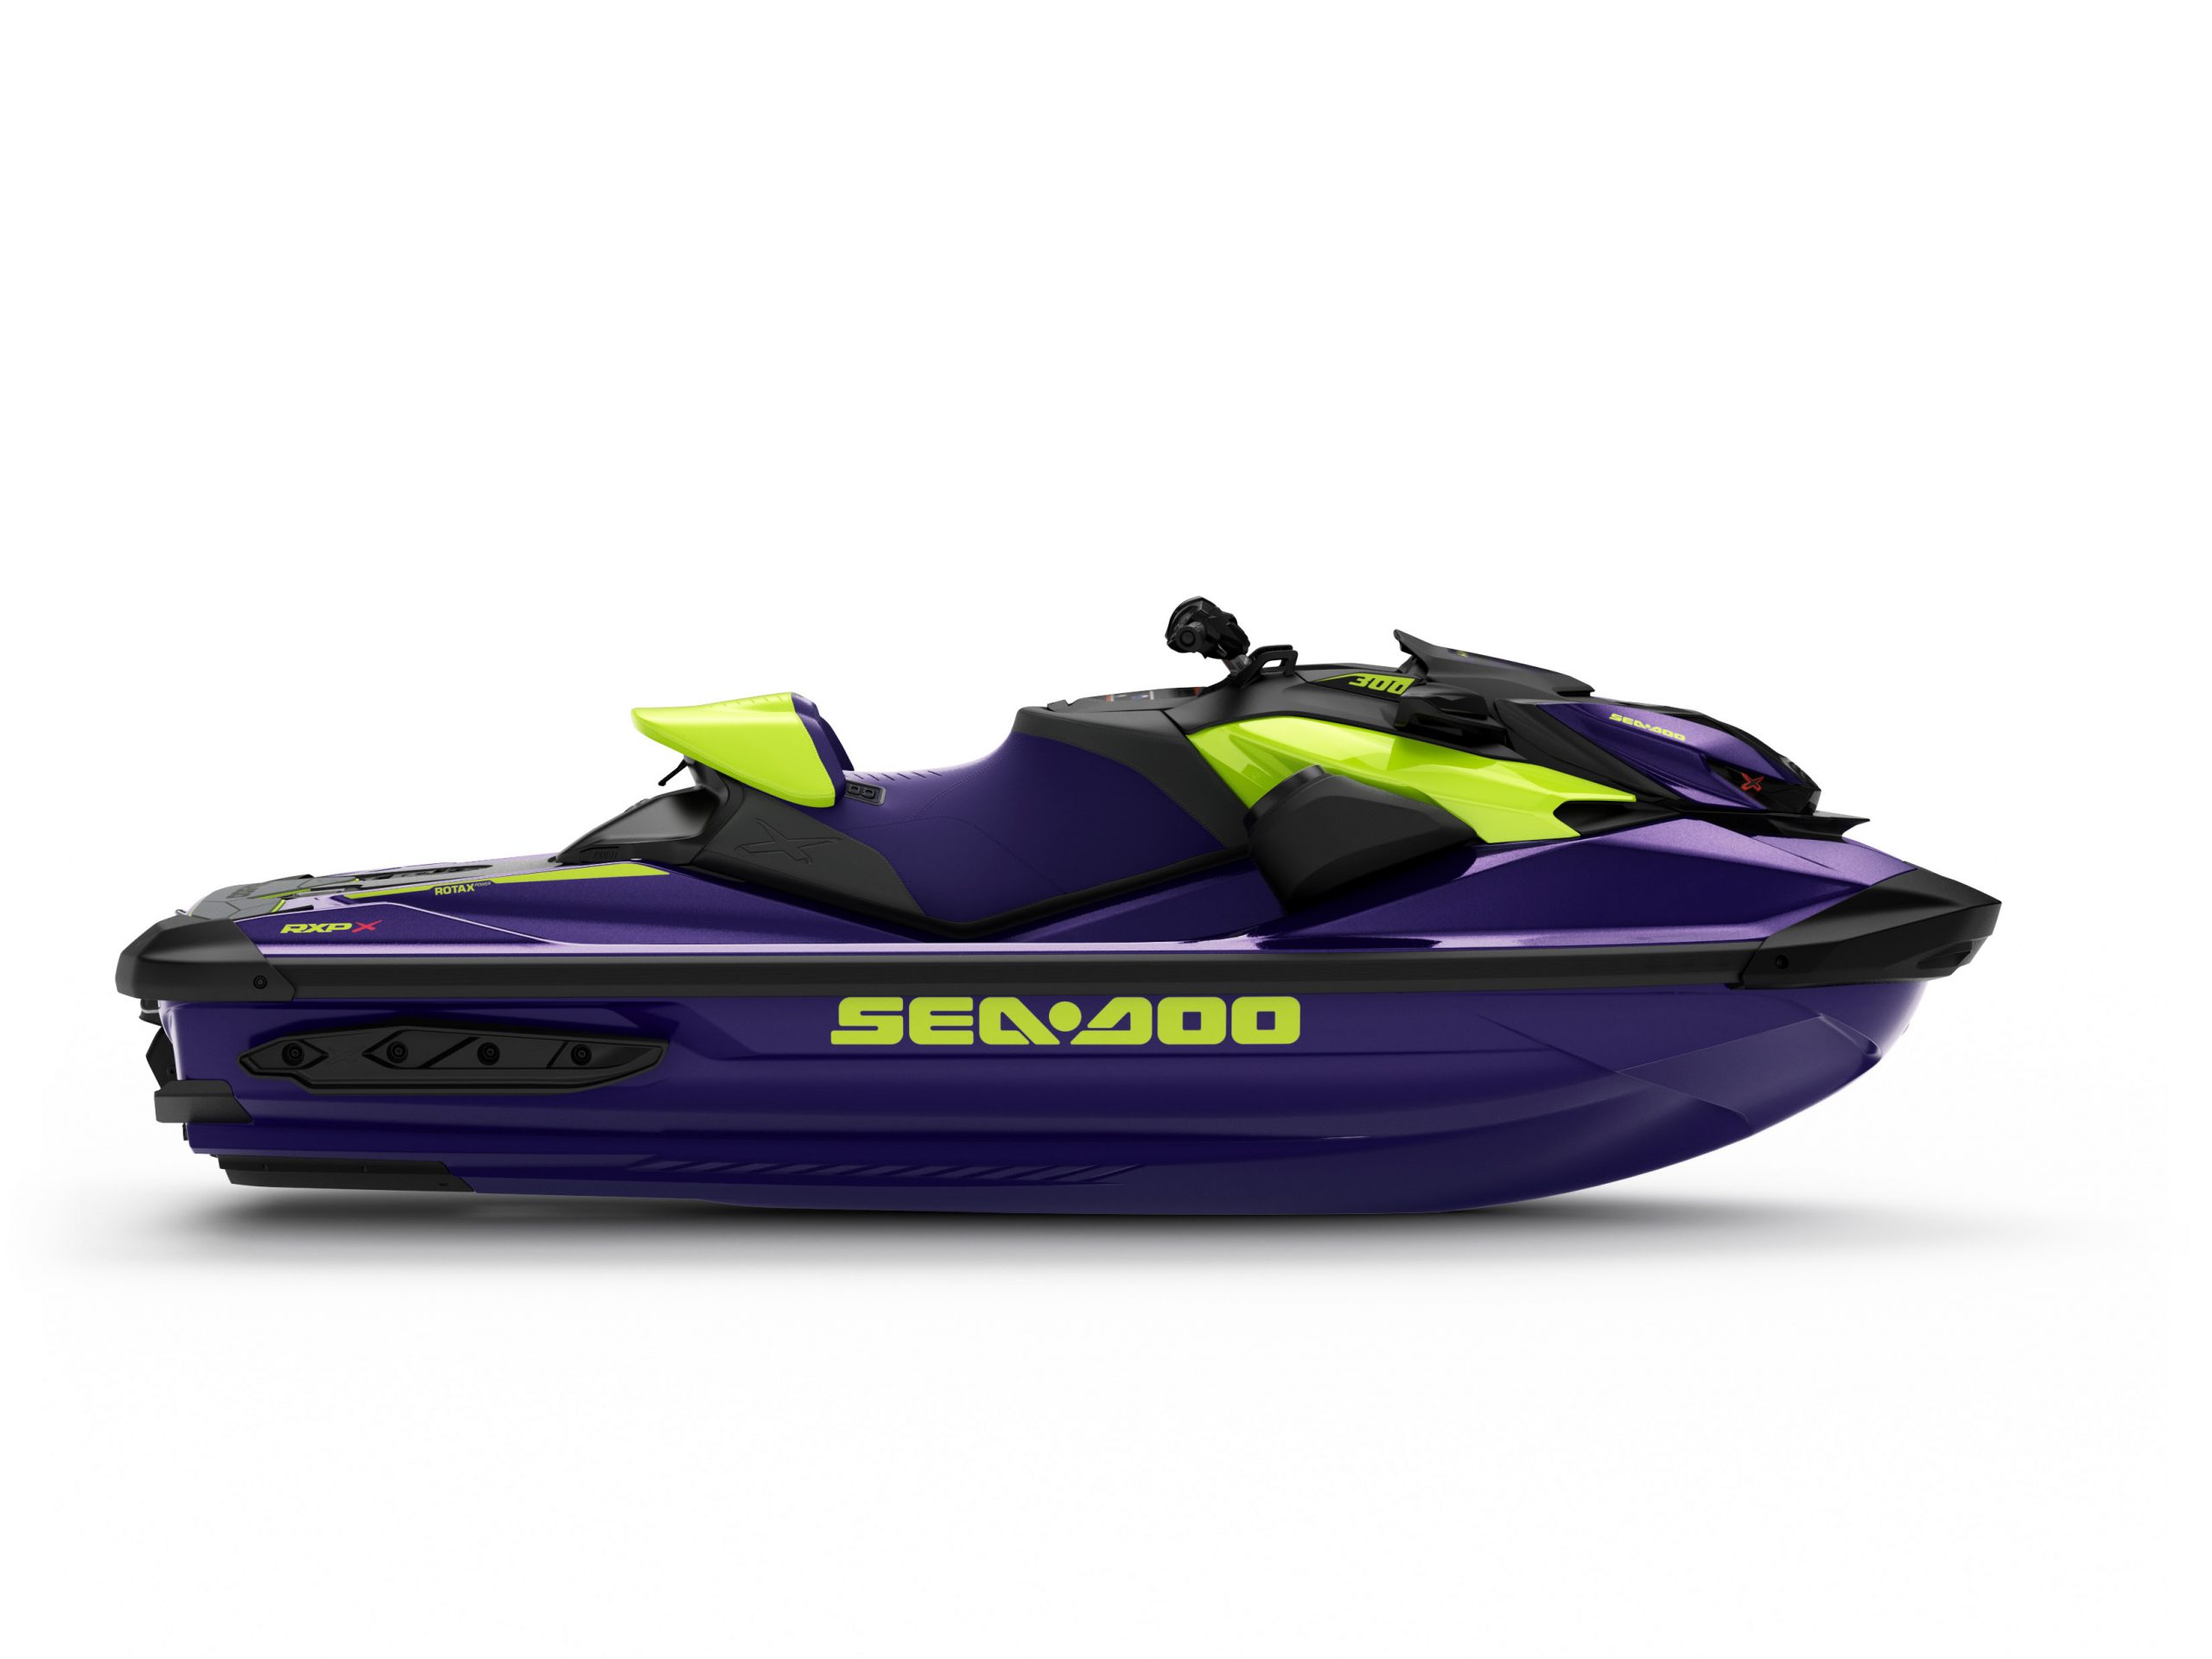 Sea-doo RXP-X 300 - boat shopping